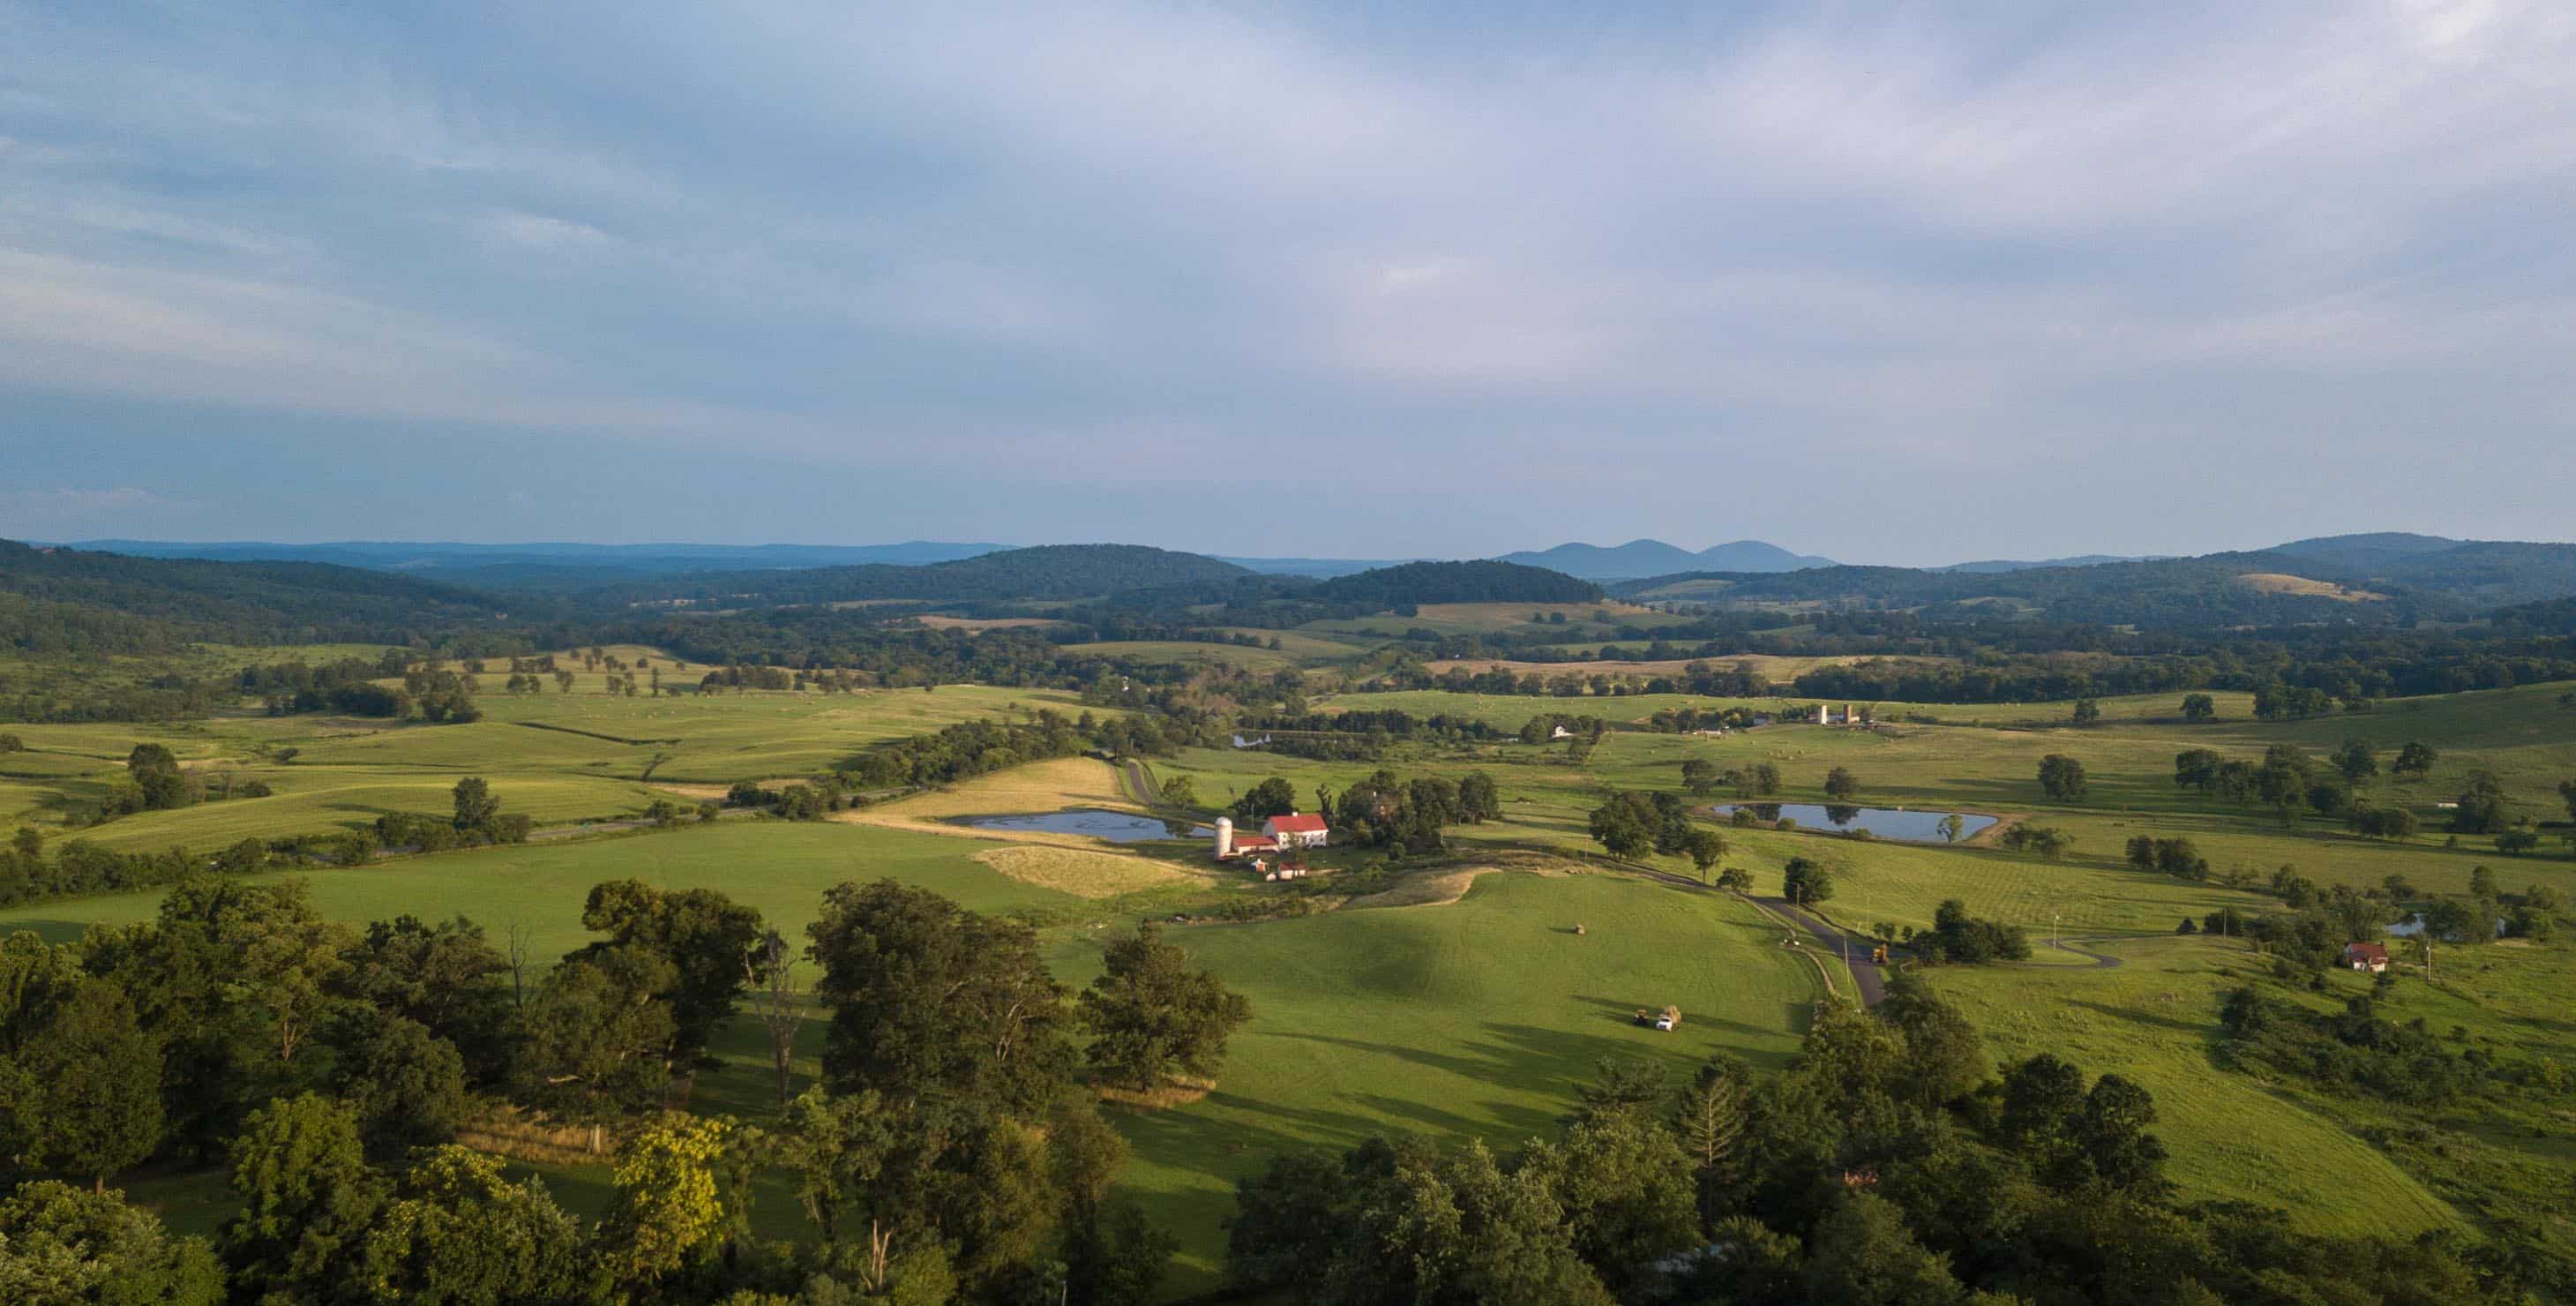 Aerial photo of the countryside around Paris Virginia